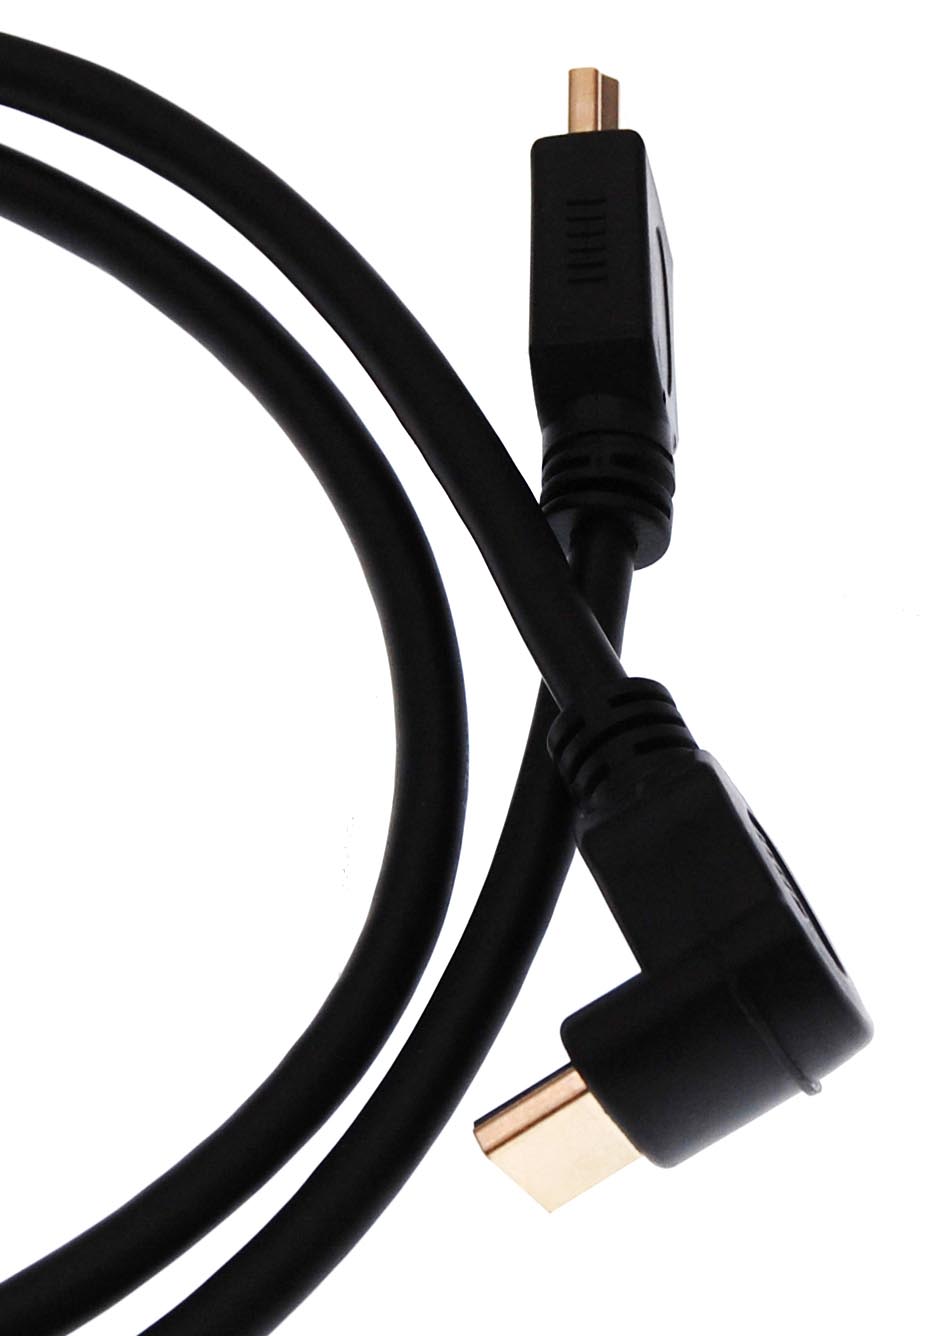 HDMI-Kabel mit Winkelstecker / Stecker, vergoldet